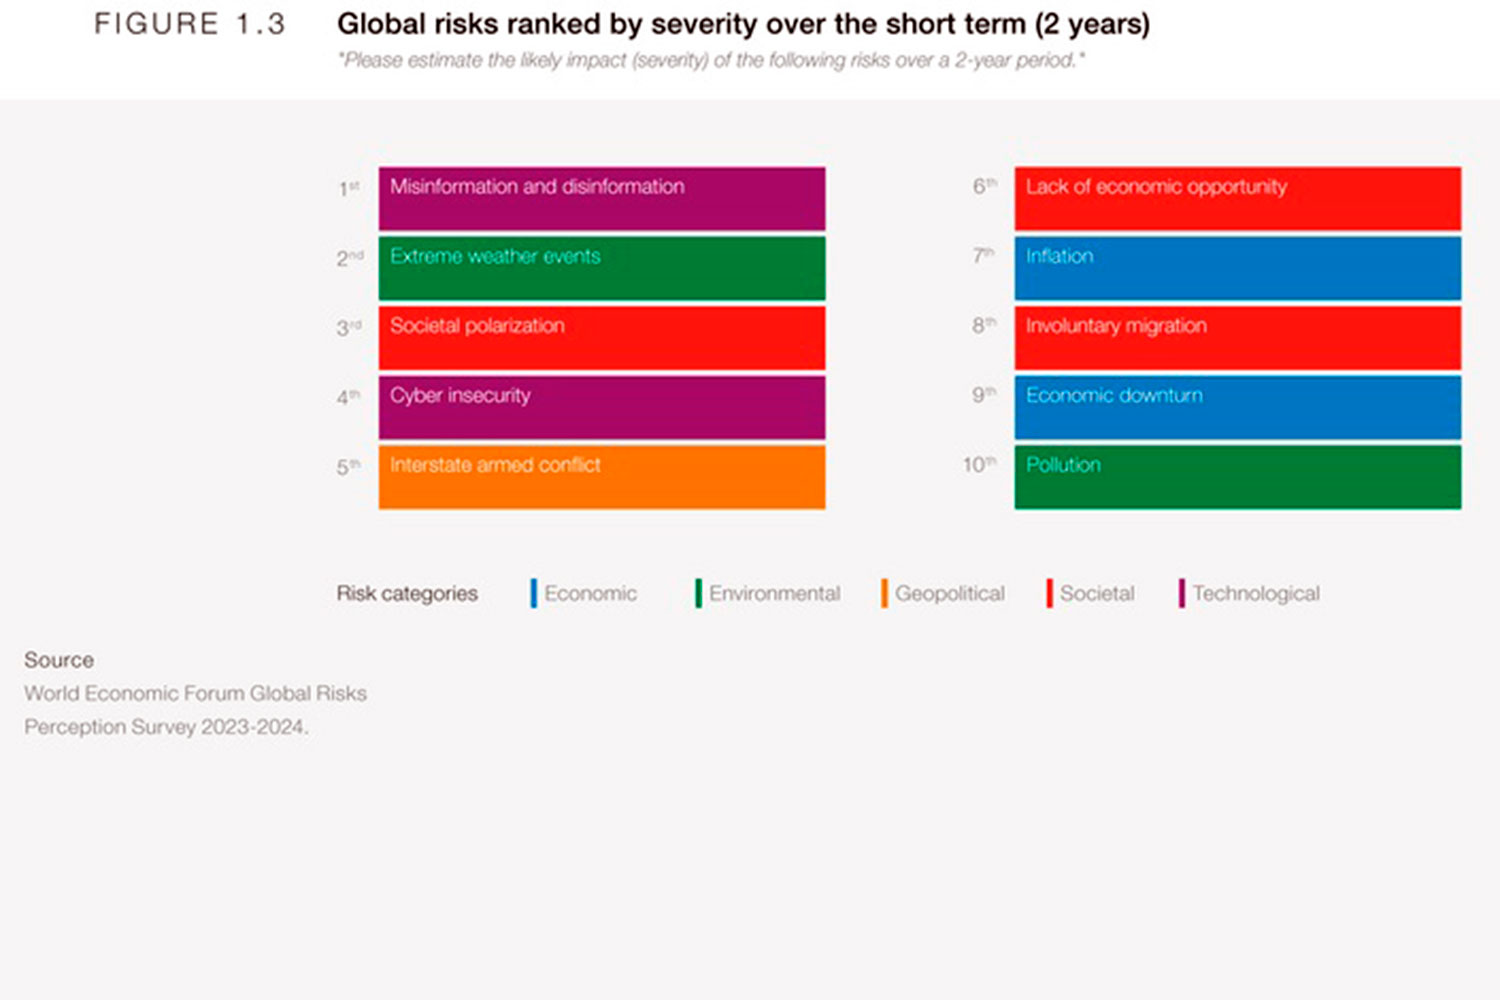 Principales riesgos globales en el periodo 2024-2025 según la encuesta publicada por el Foro Económico Mundial